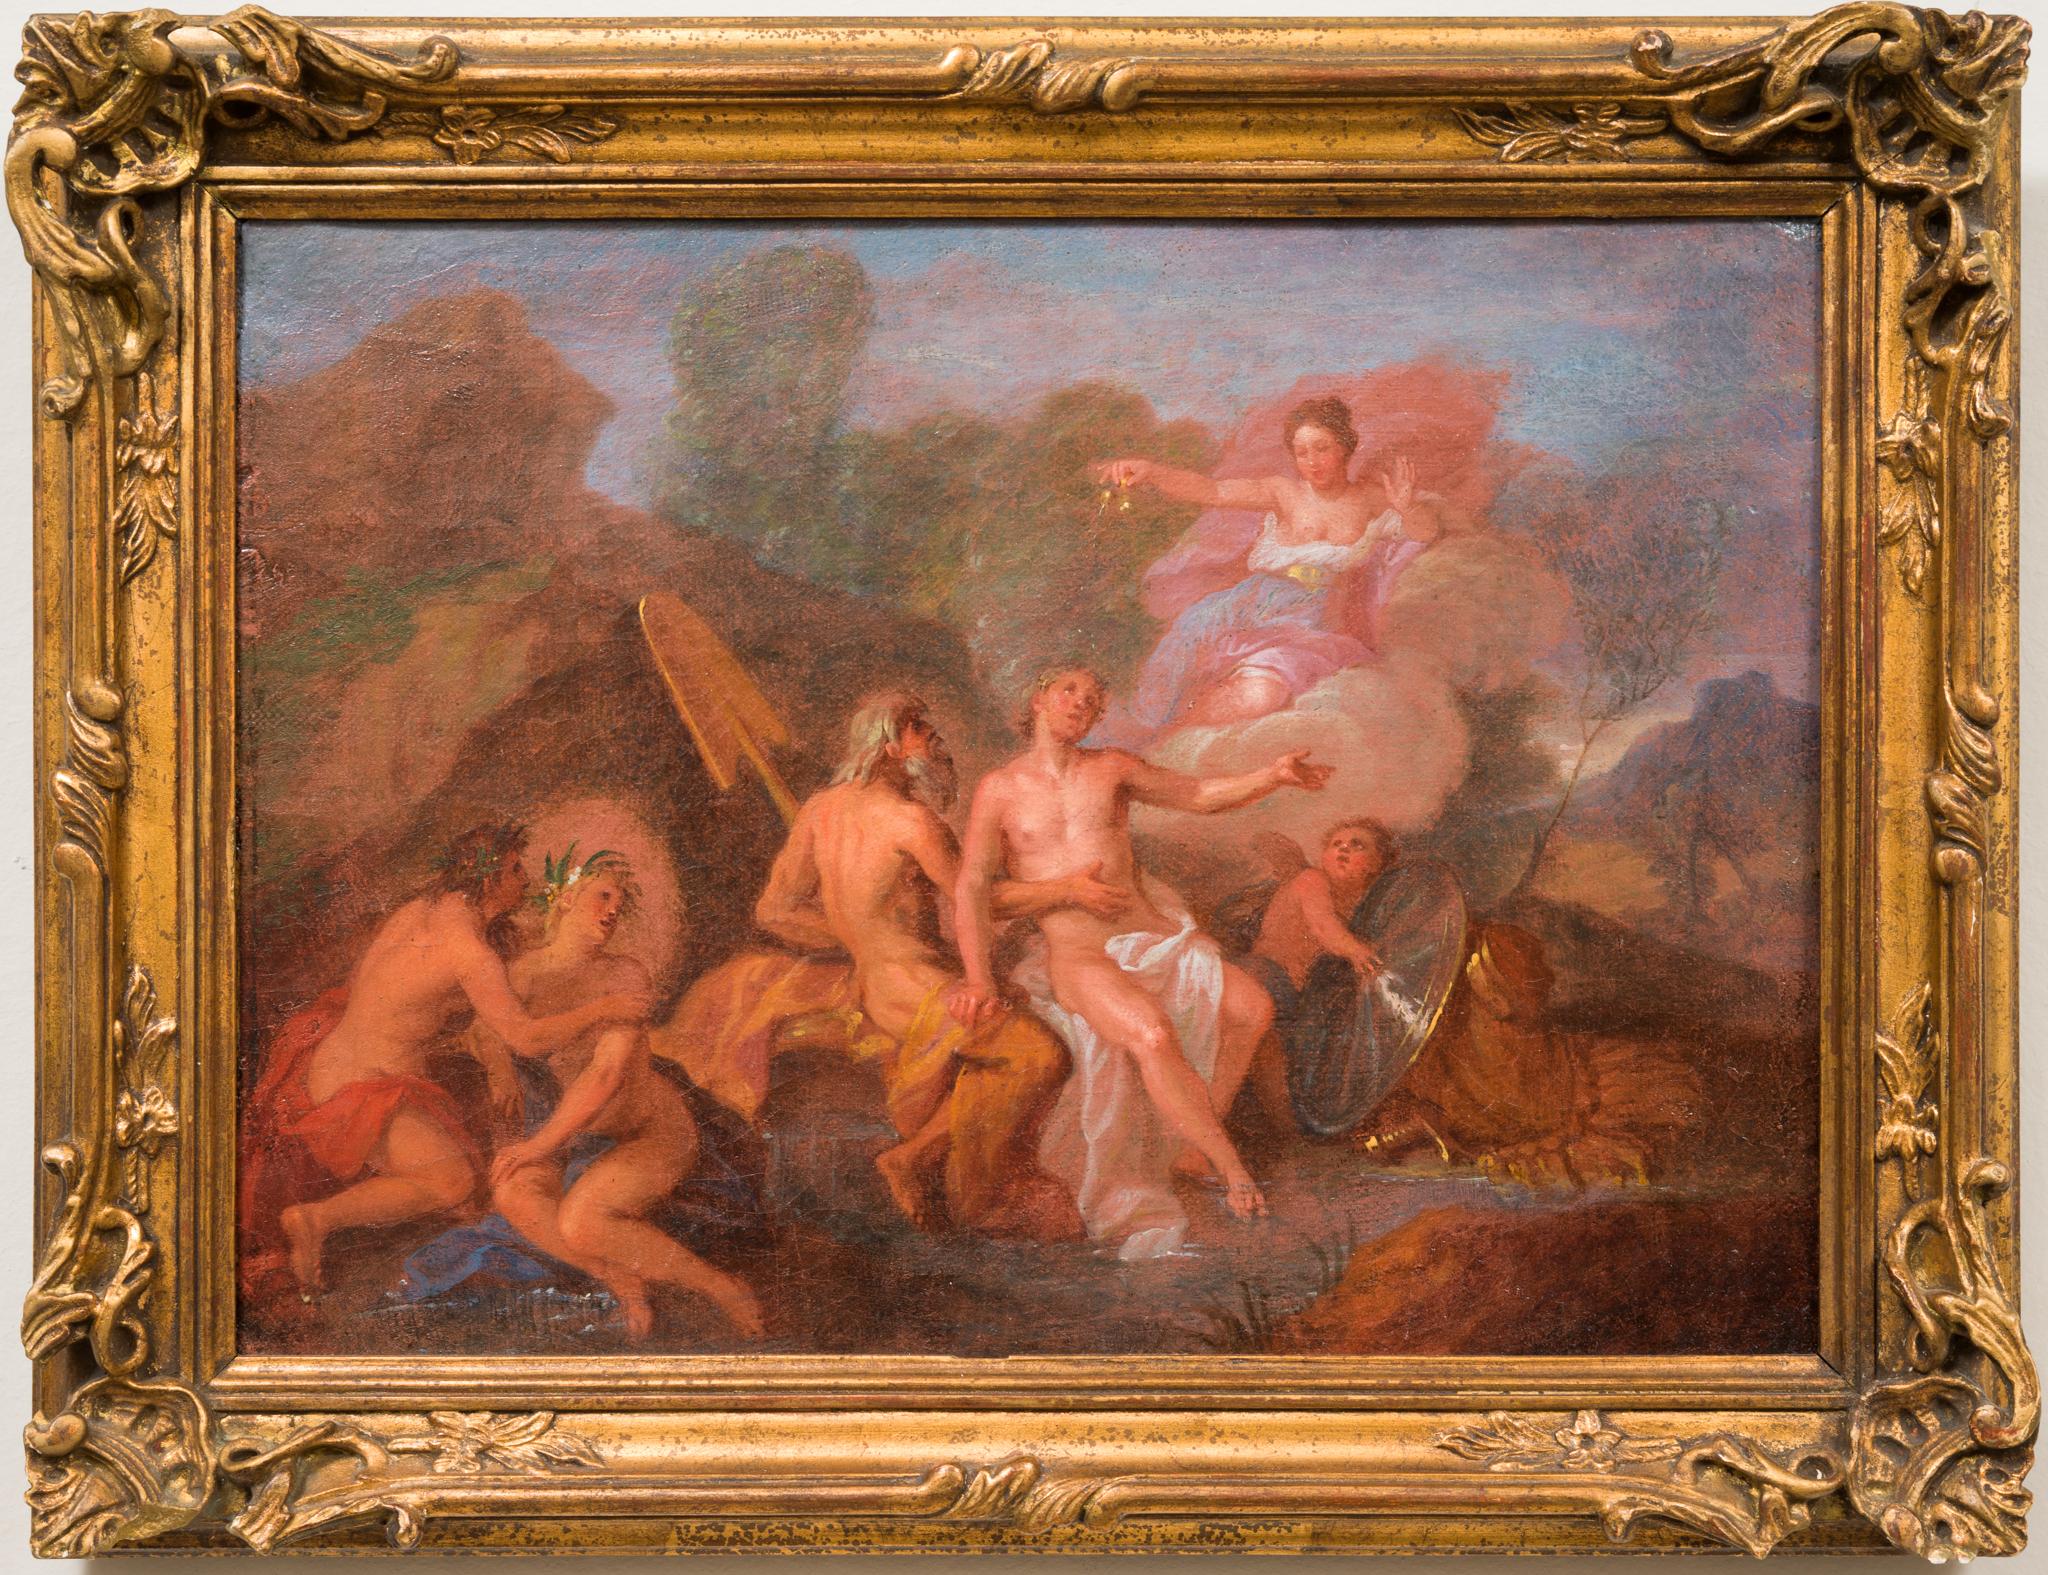 A Mythological Scene, Early 1700s, Oil on Canvas